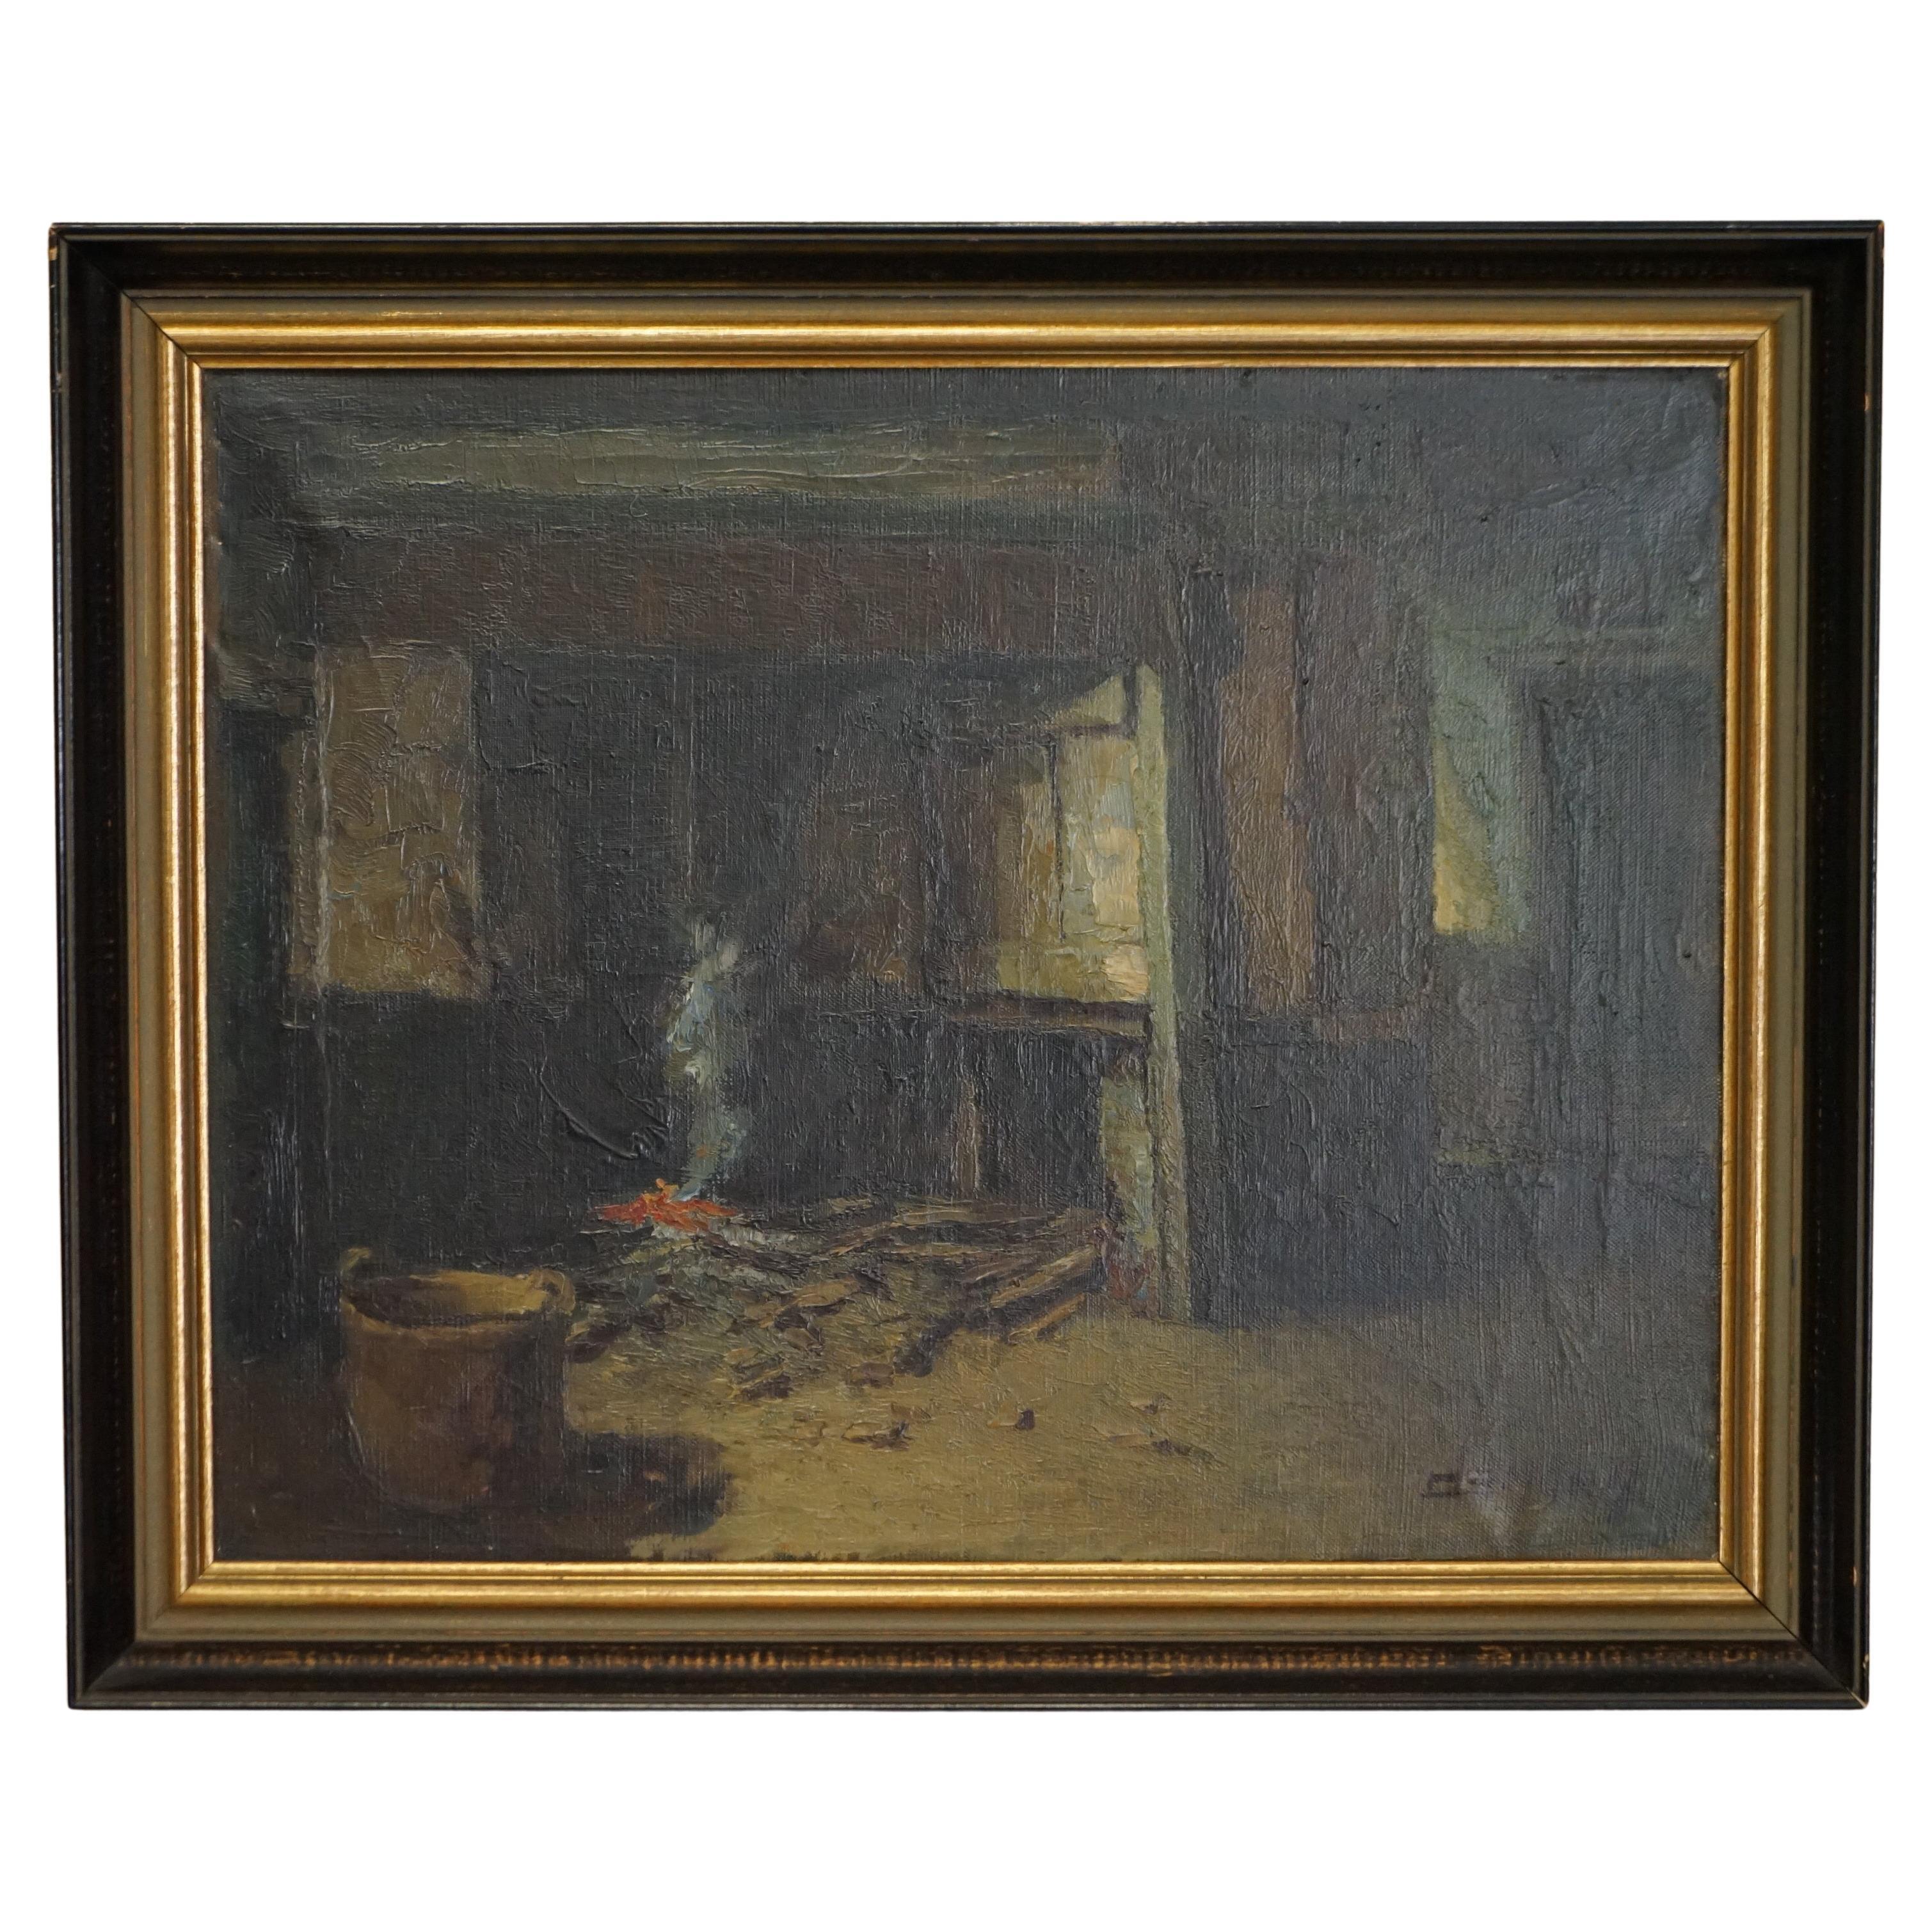 Ancienne peinture à l'huile flamande exposée dans un musée au petit musée, signée Demoen